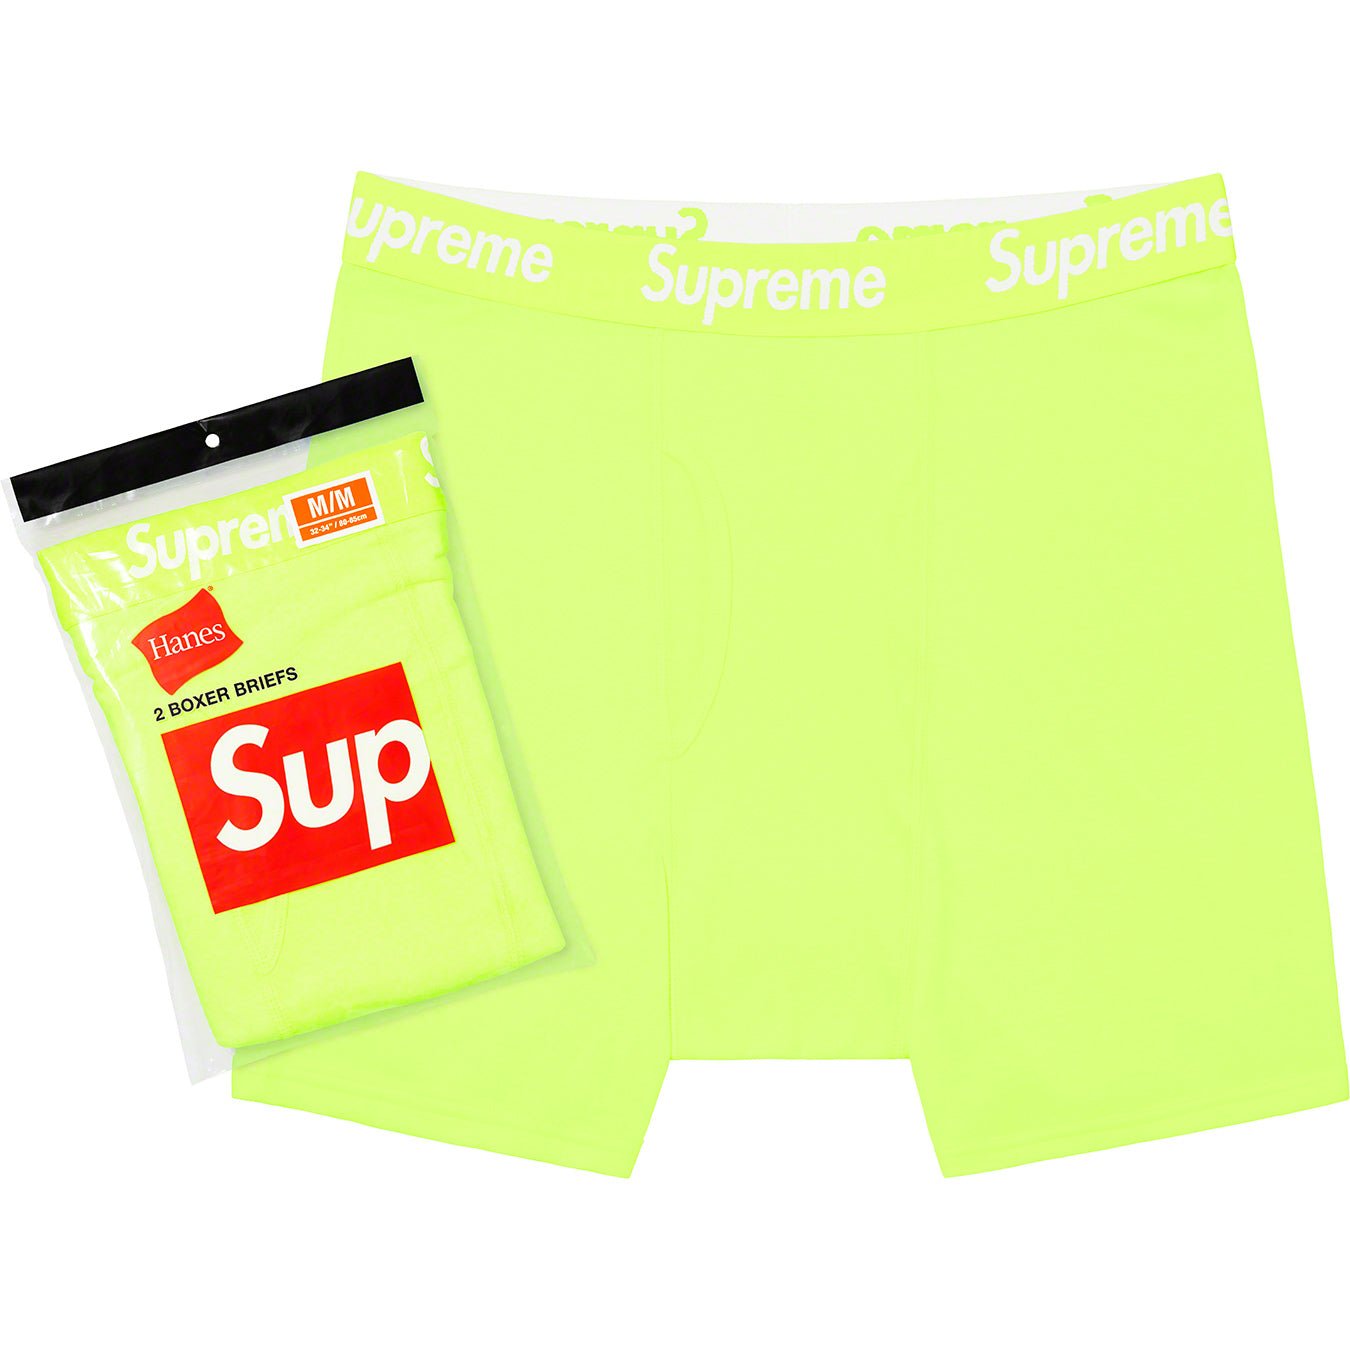 Supreme / Hanes Black + Grey Boxer Briefs Underwear (2 Pack) X